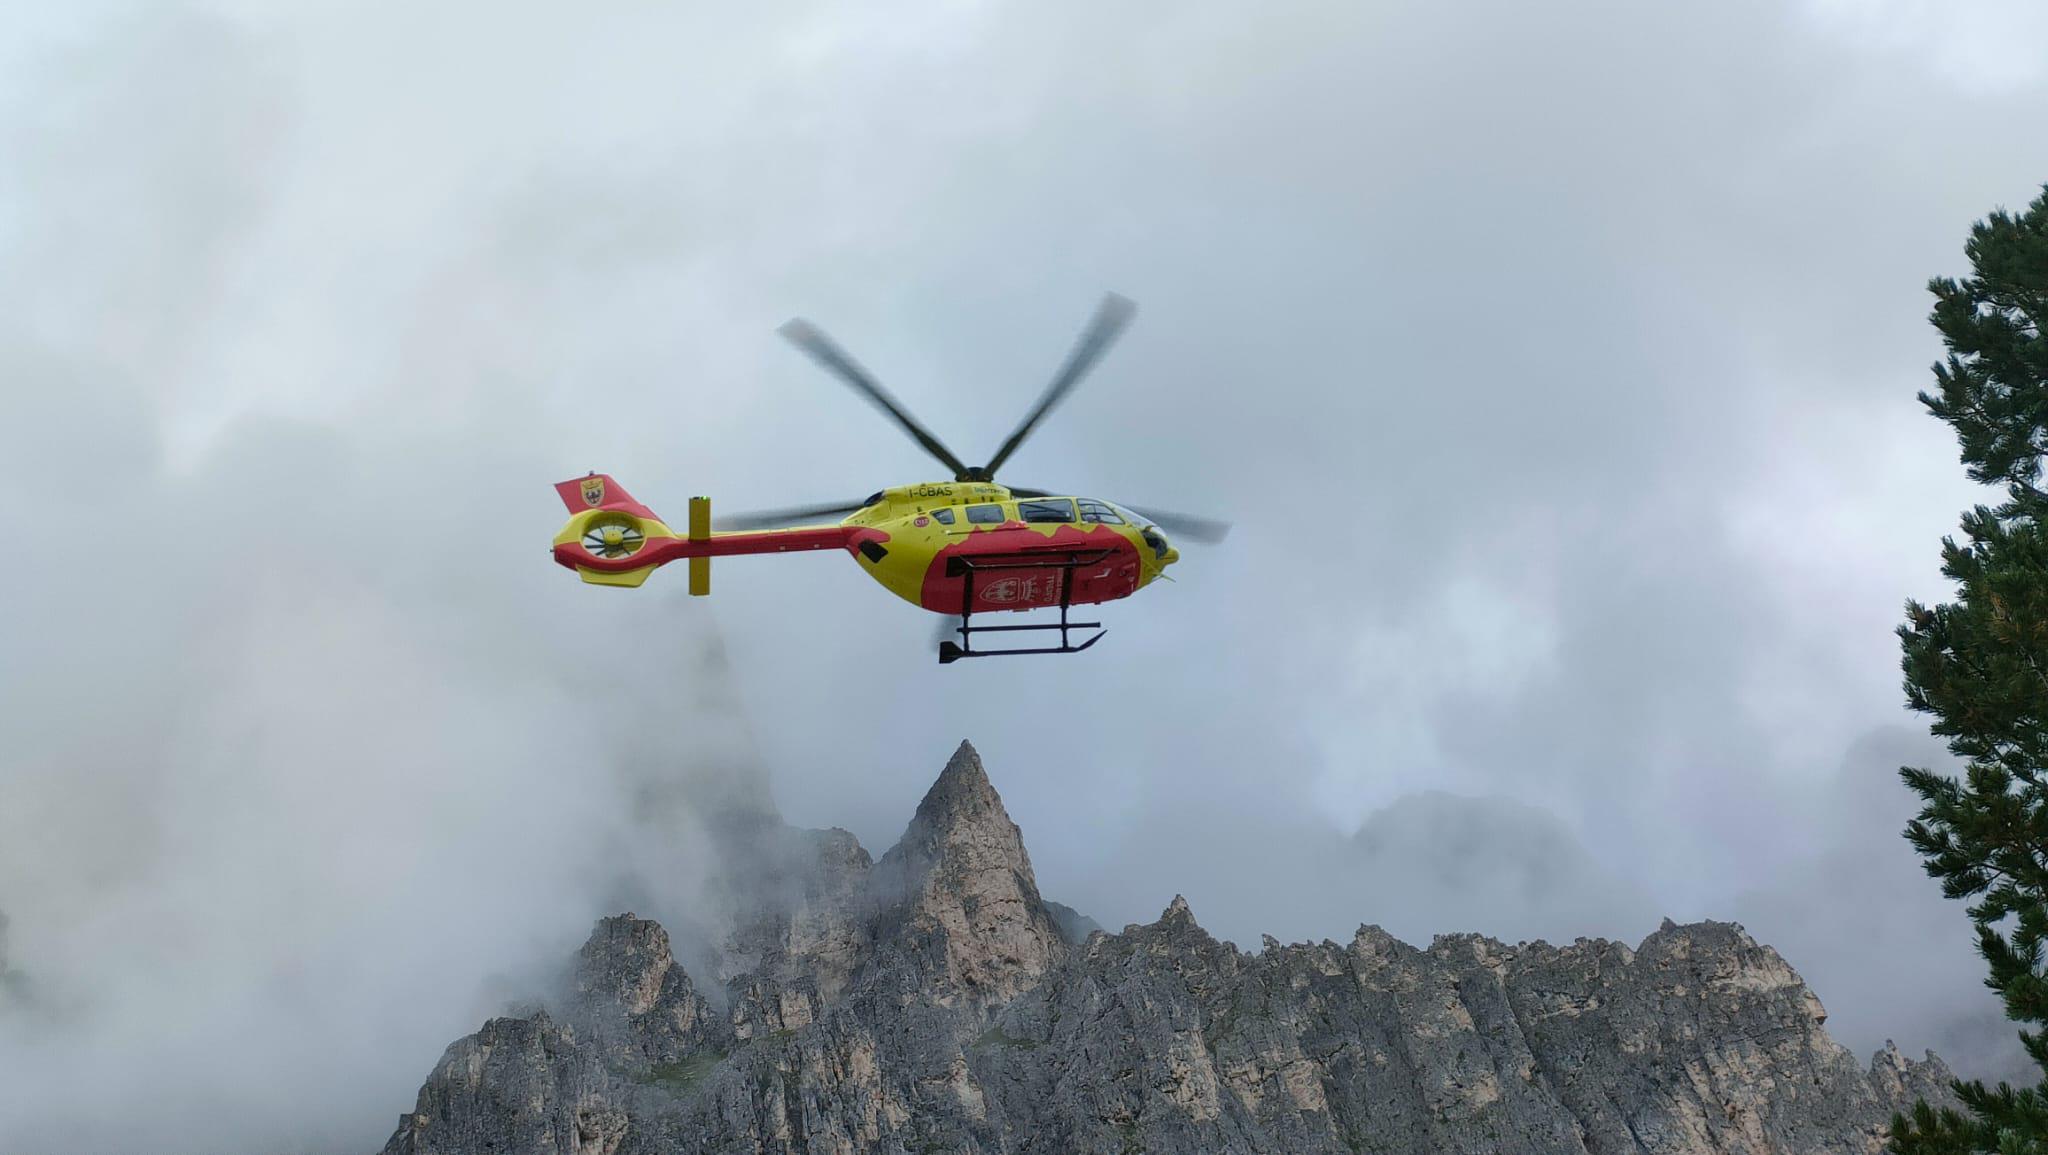 Trentino - due alpinisti precipitano sulla Presanella: un morto e un ferito